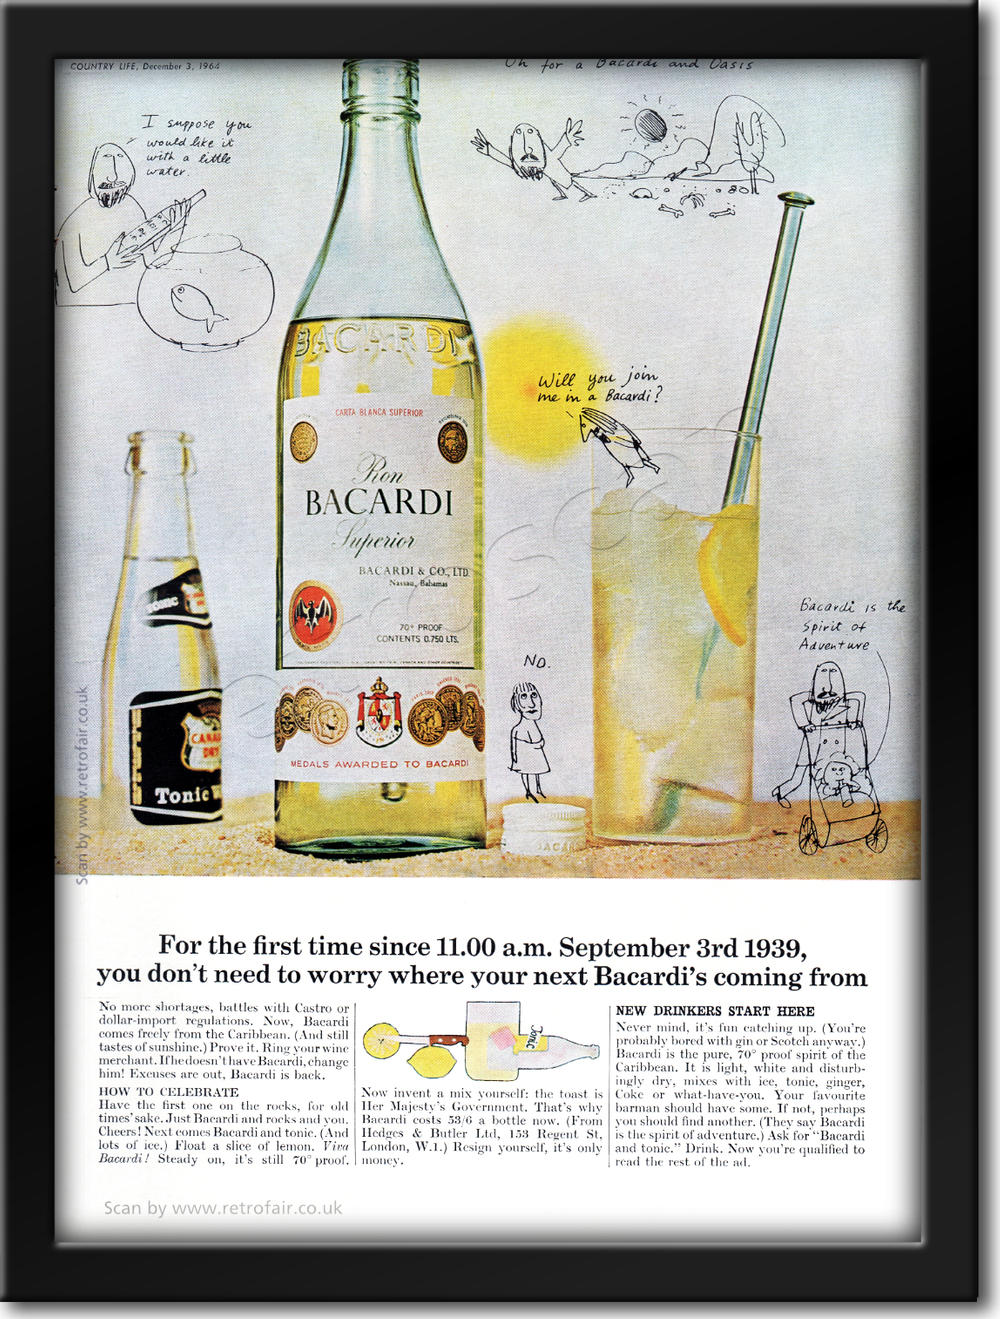 1964 vintage Bacardi Rum advert